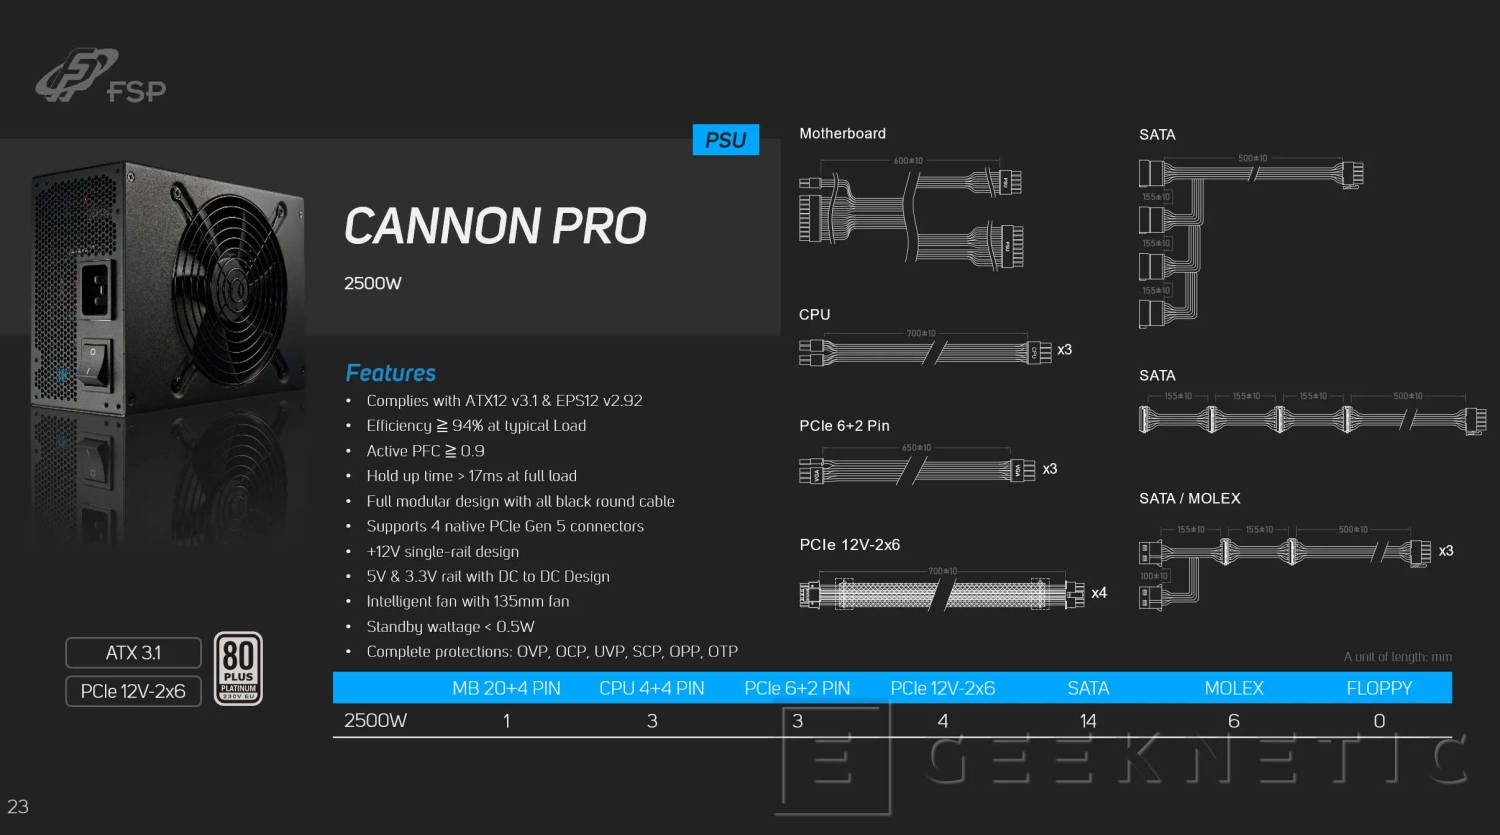 Cannon Pro 2500